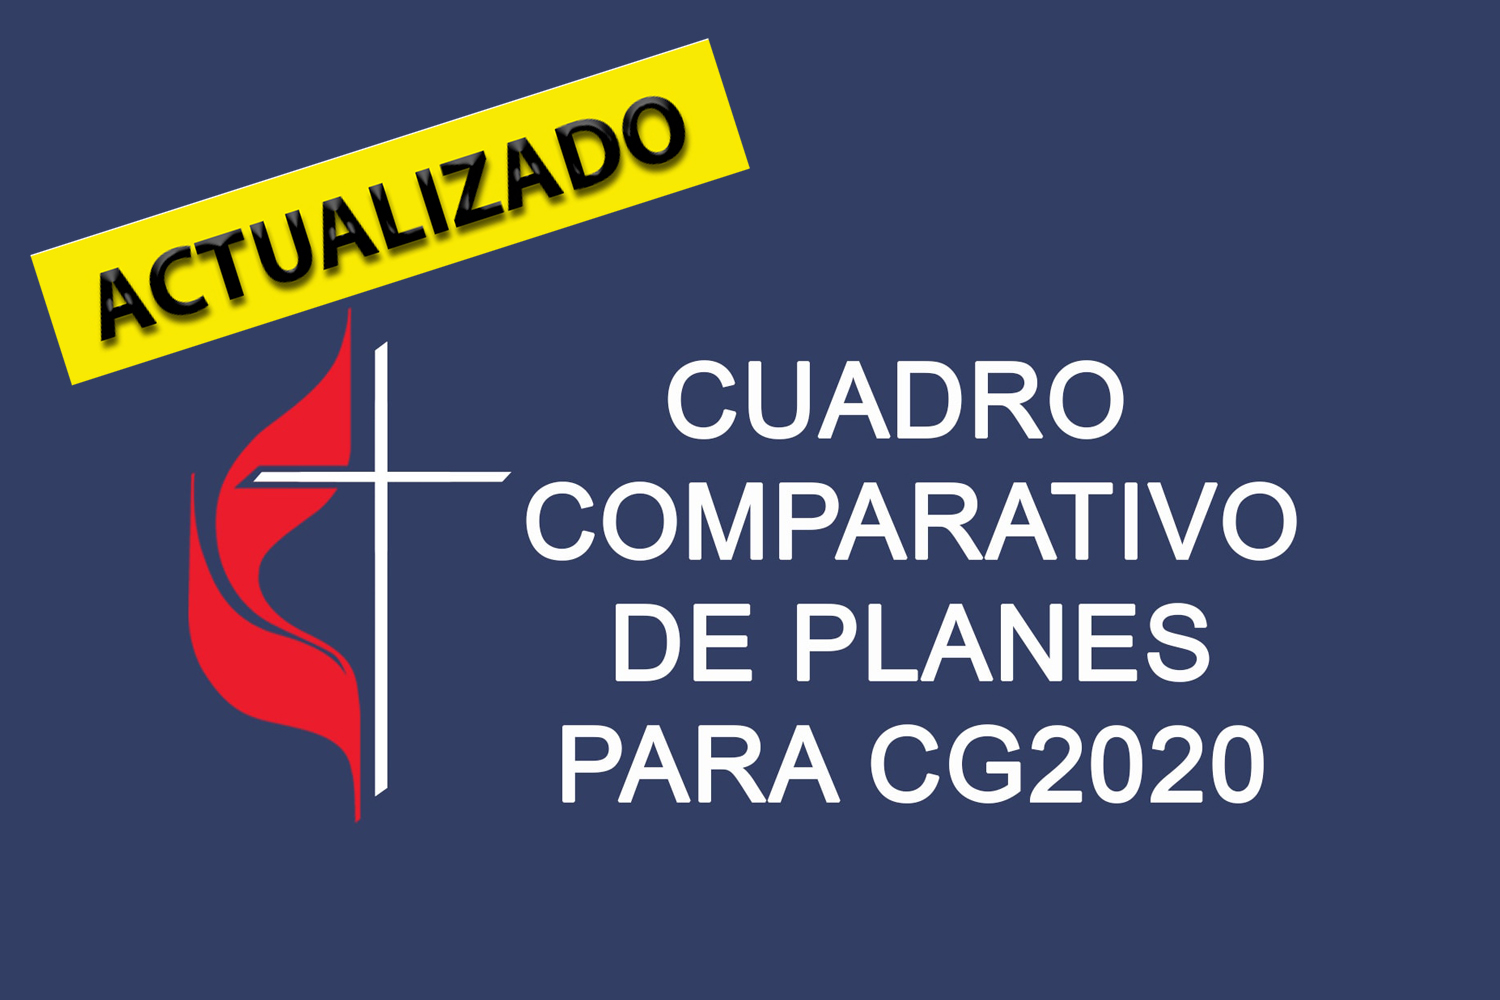 Cuadro comparativo actualizado de planes para la CG 2020. Gráfico versión en español Rev. Gustavo Vasquez, Noticias MU.